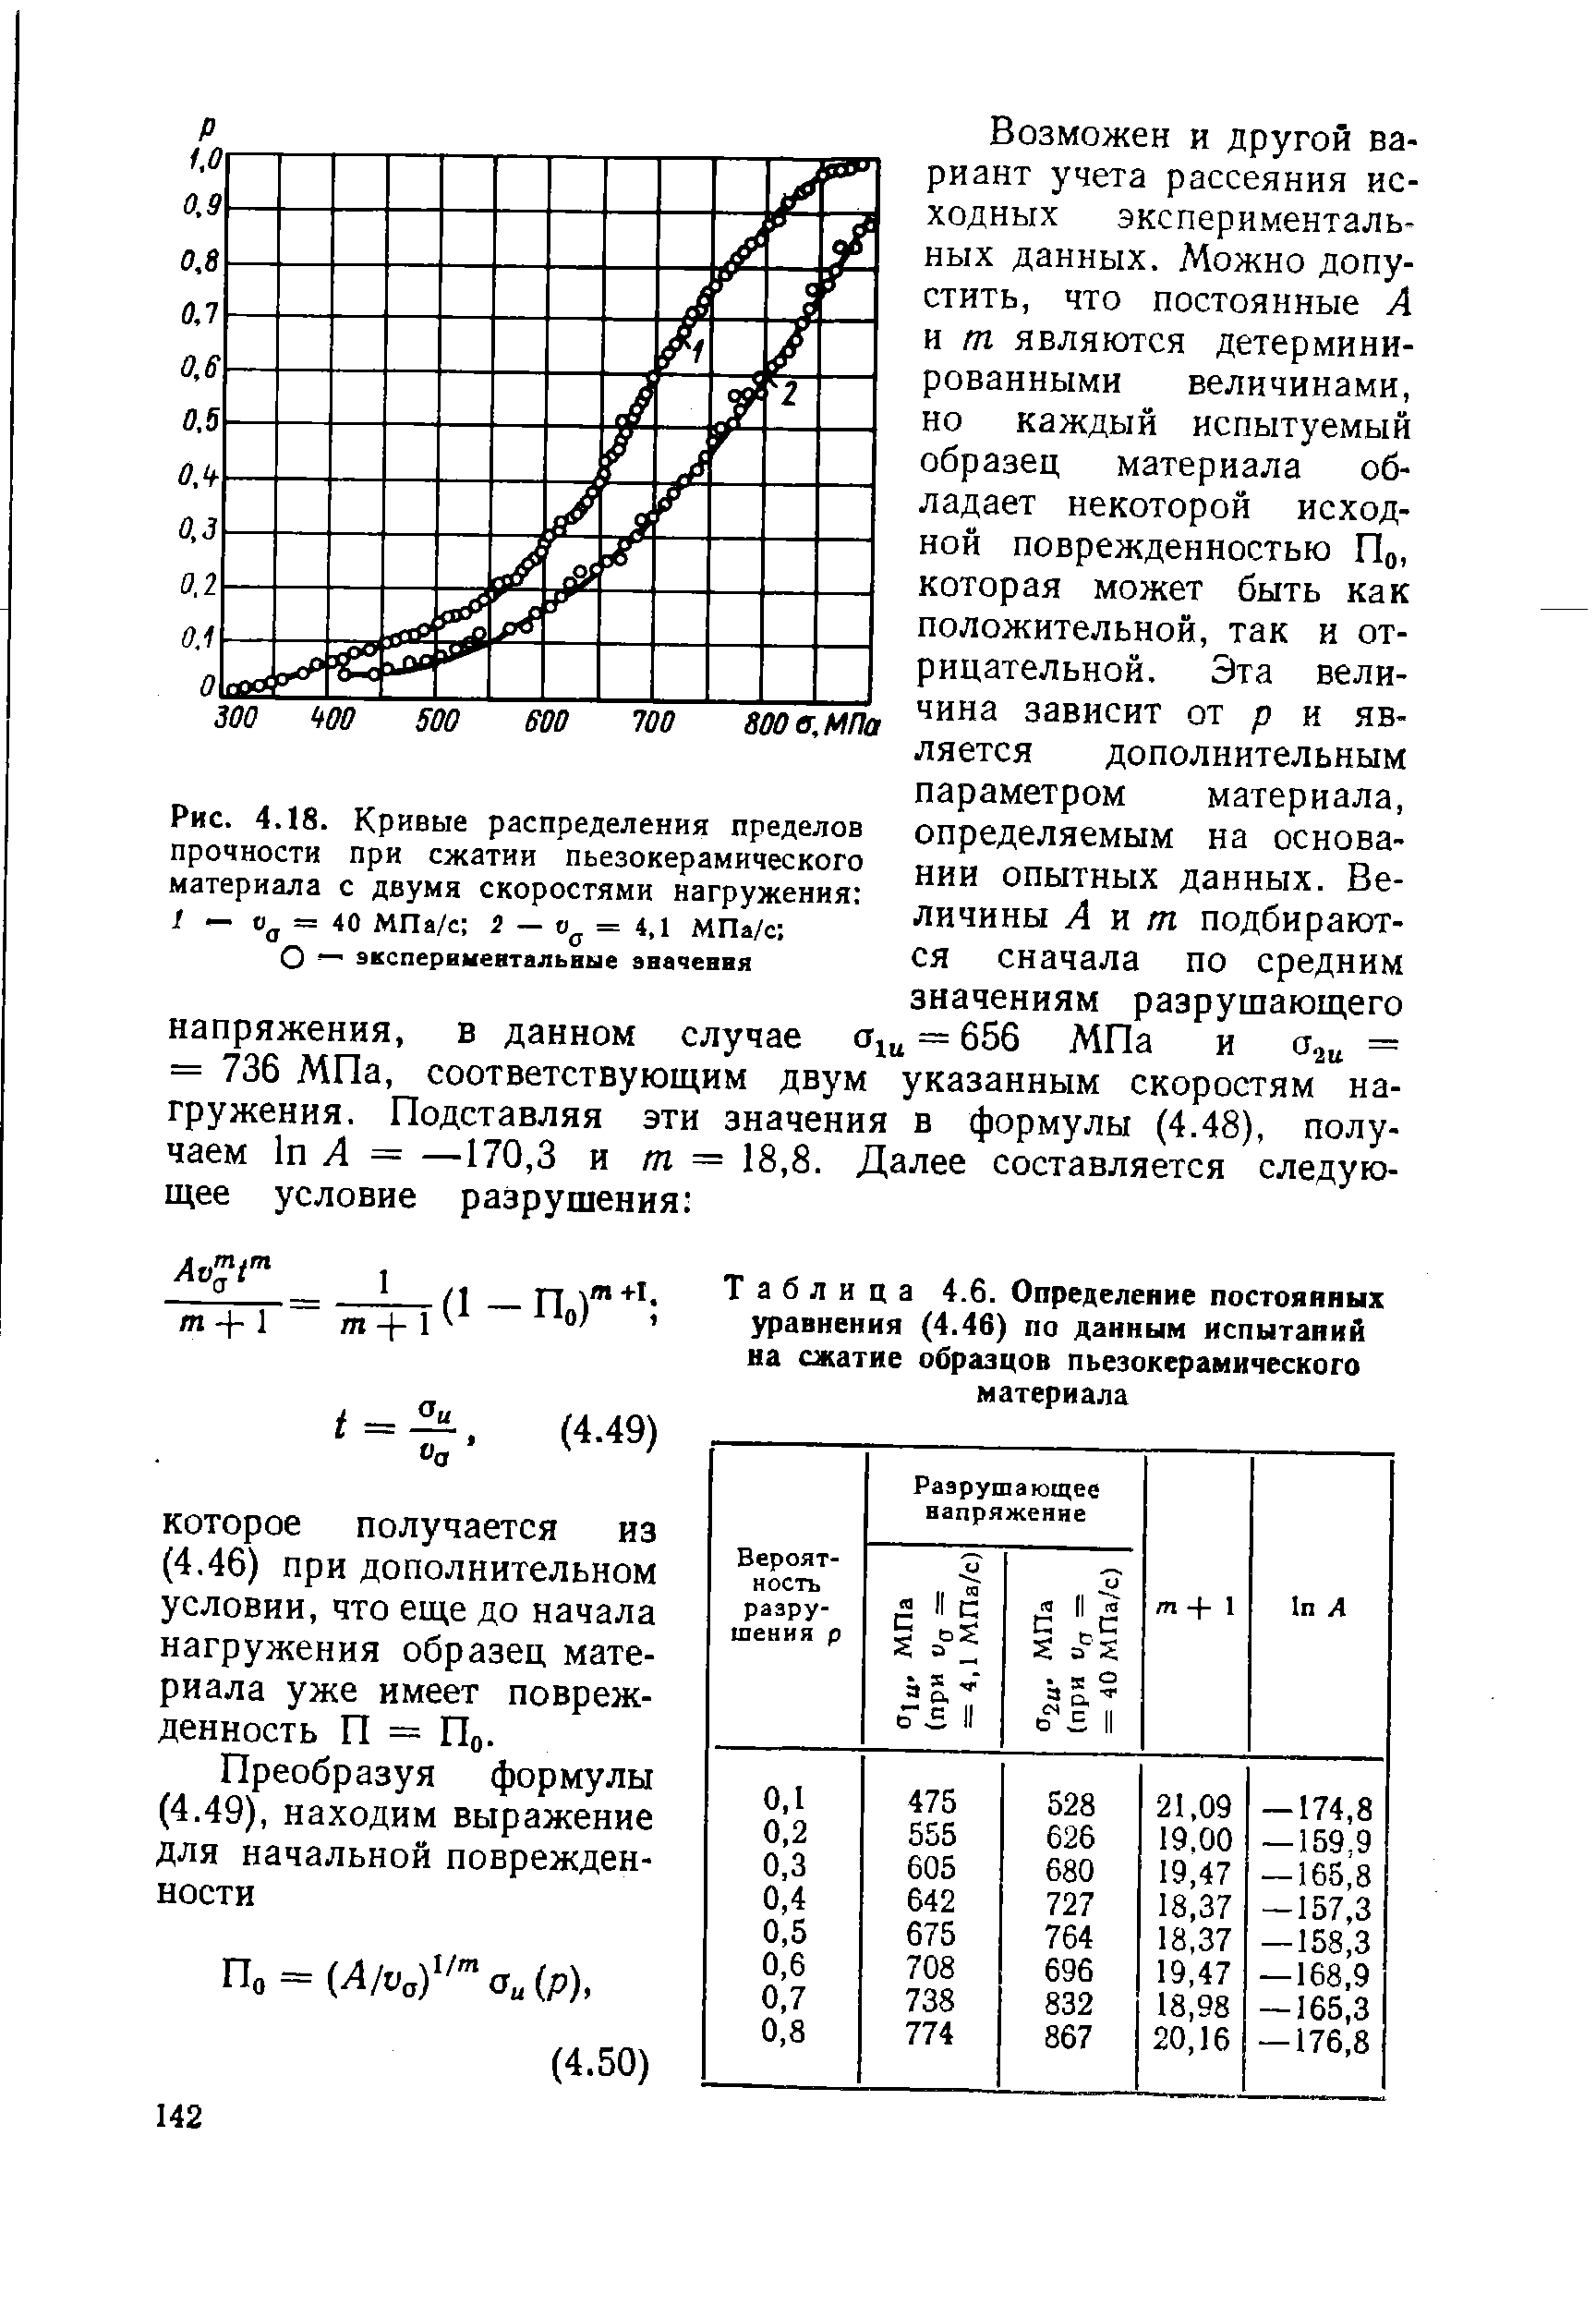 Таблица 4.6. Определение постояяных уравнения (4.46) по данным испытаний на сжатие образцов пьезокерамического материала
